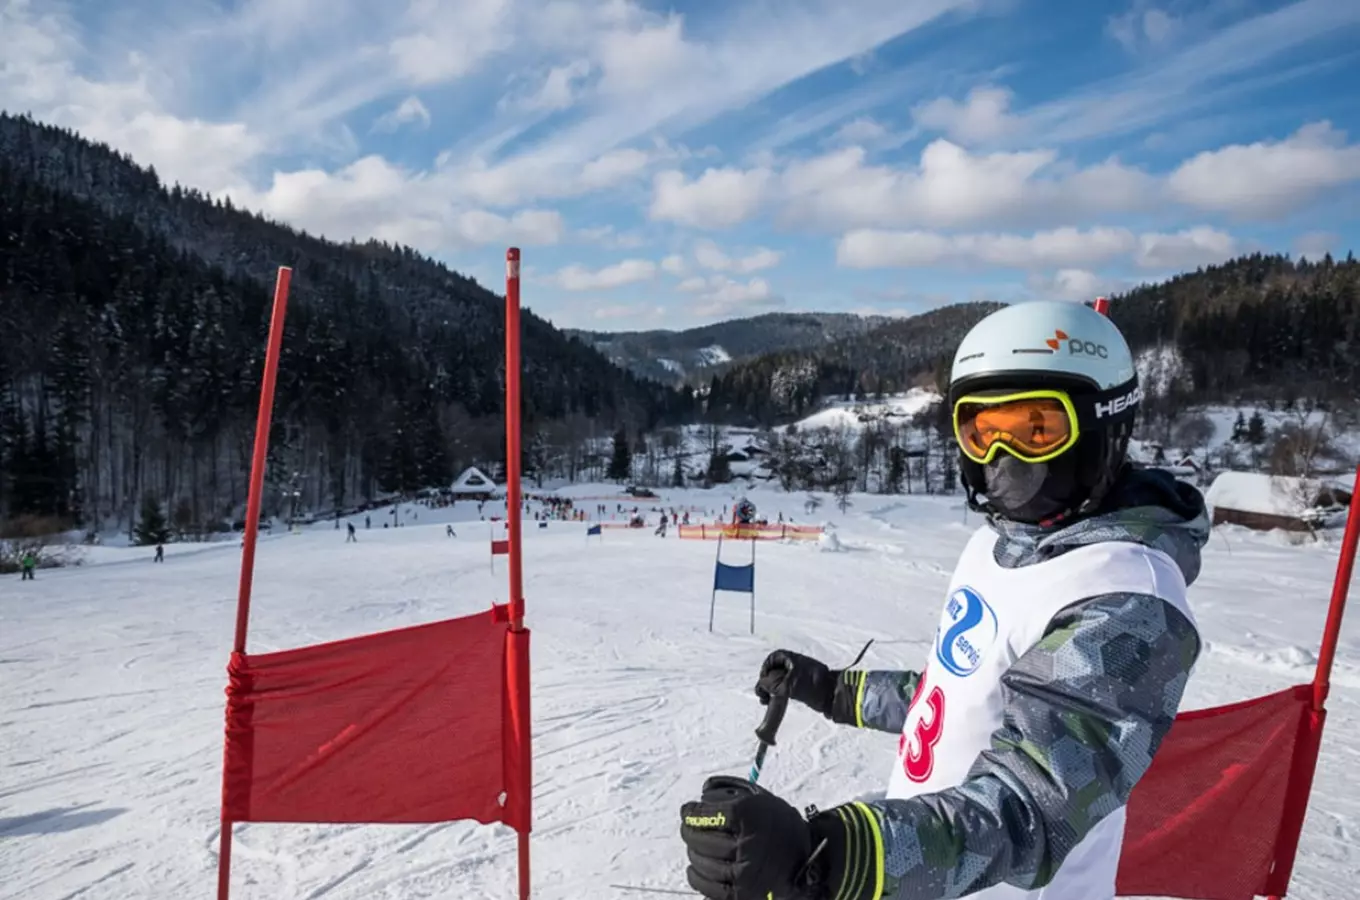 Ski areál Razula otevírá sjezdovku Horal, dobré podmínky jsou i pro běžecké lyžování